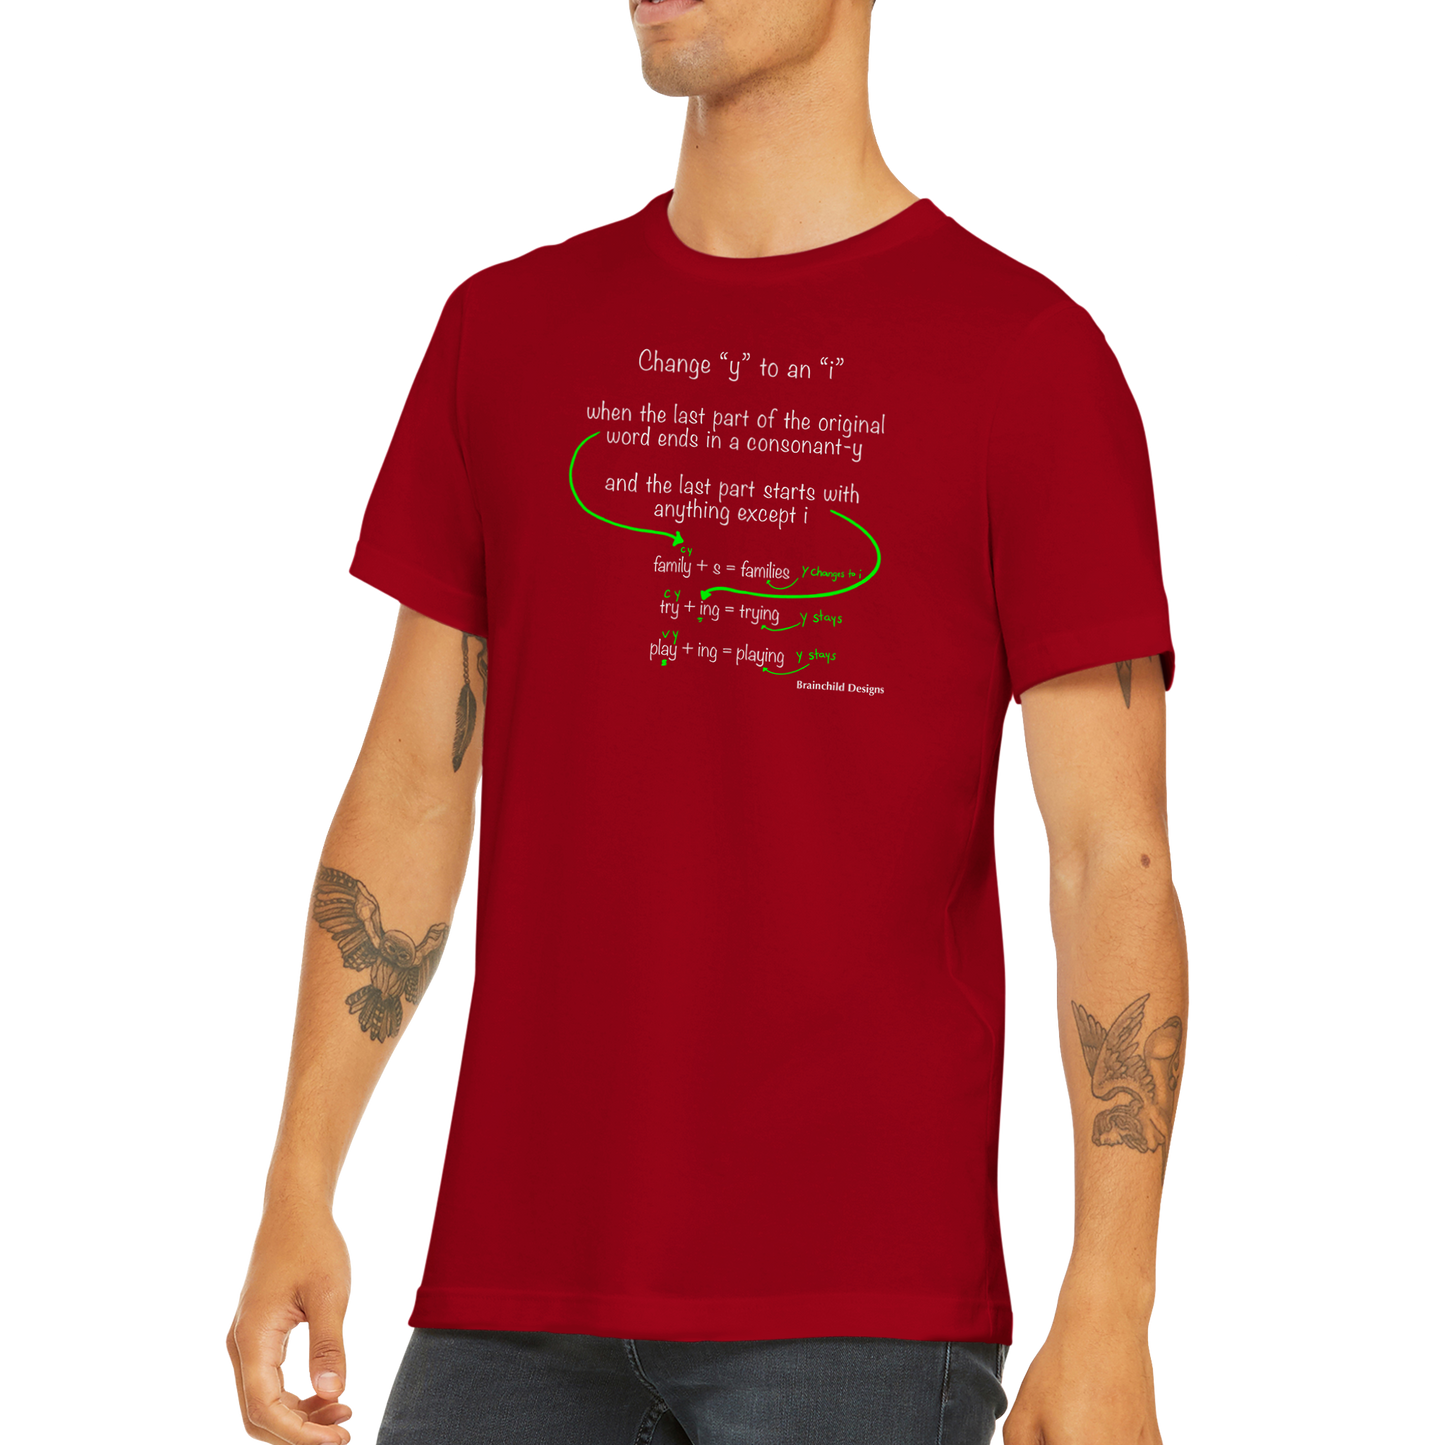 Y to I - Adult Unisex Premium Unisex Crewneck T-Shirt